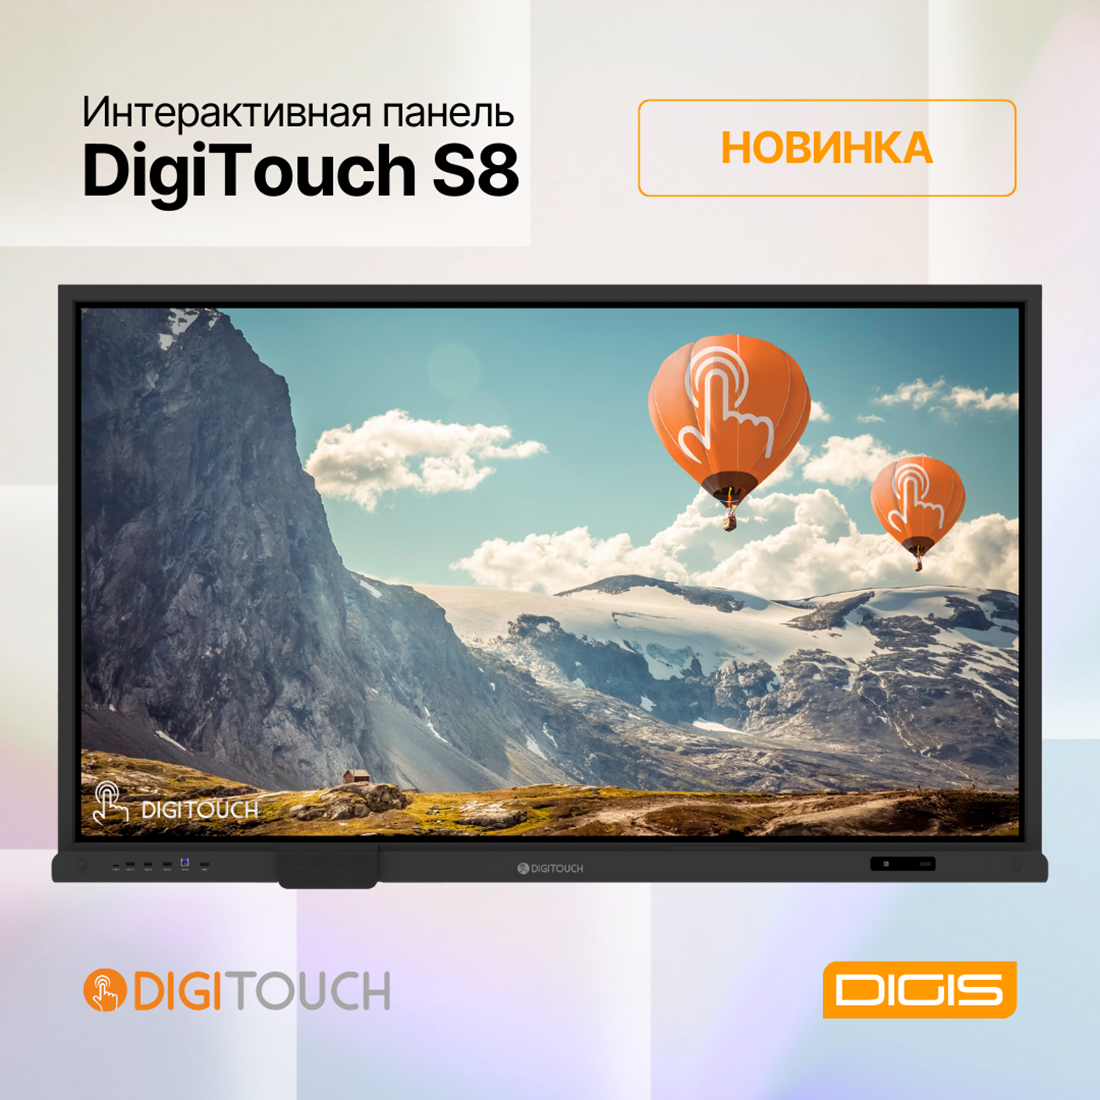 НОВИНКА! Интерактивная панель DigiTouch S8